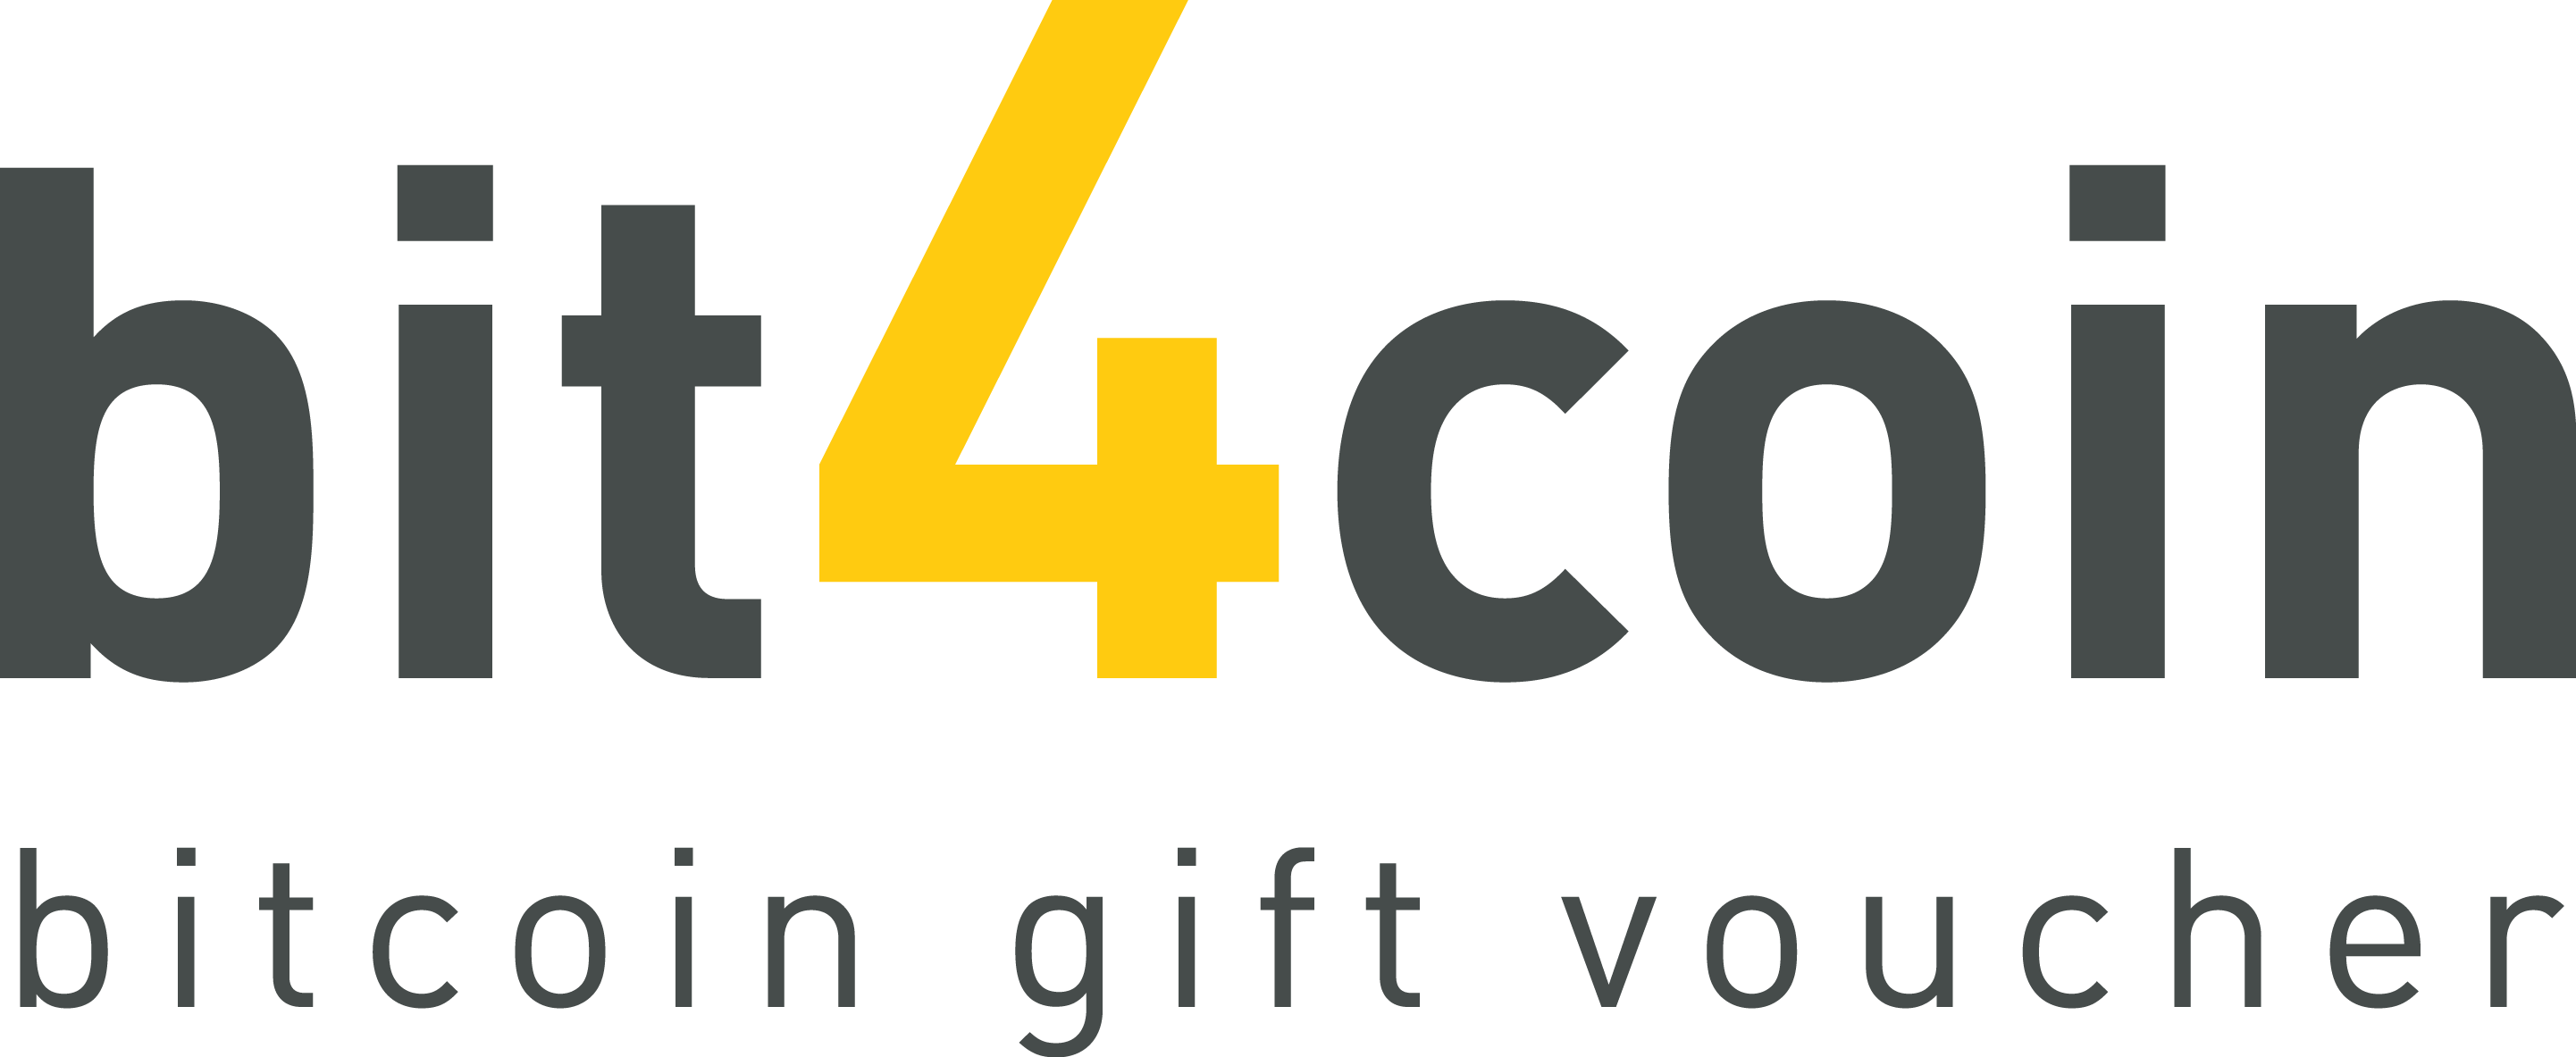 bit4coin_logo